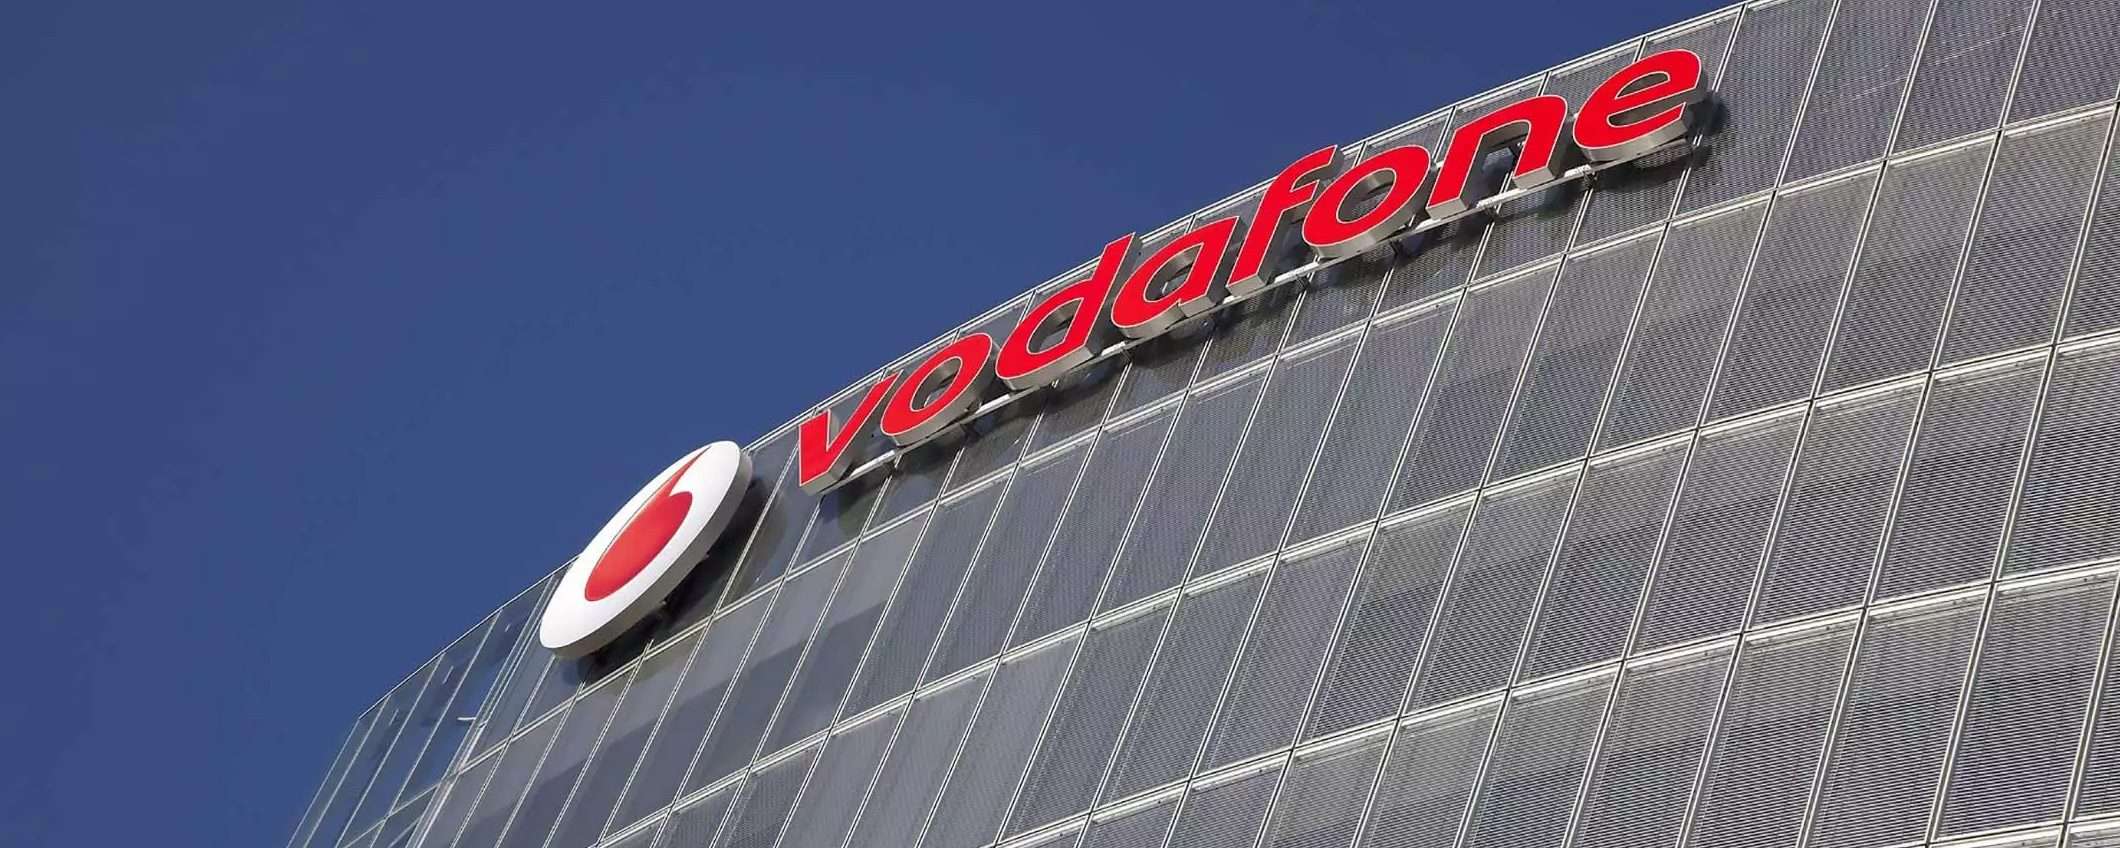 Vodafone Italia: multa per eccesso di velocità